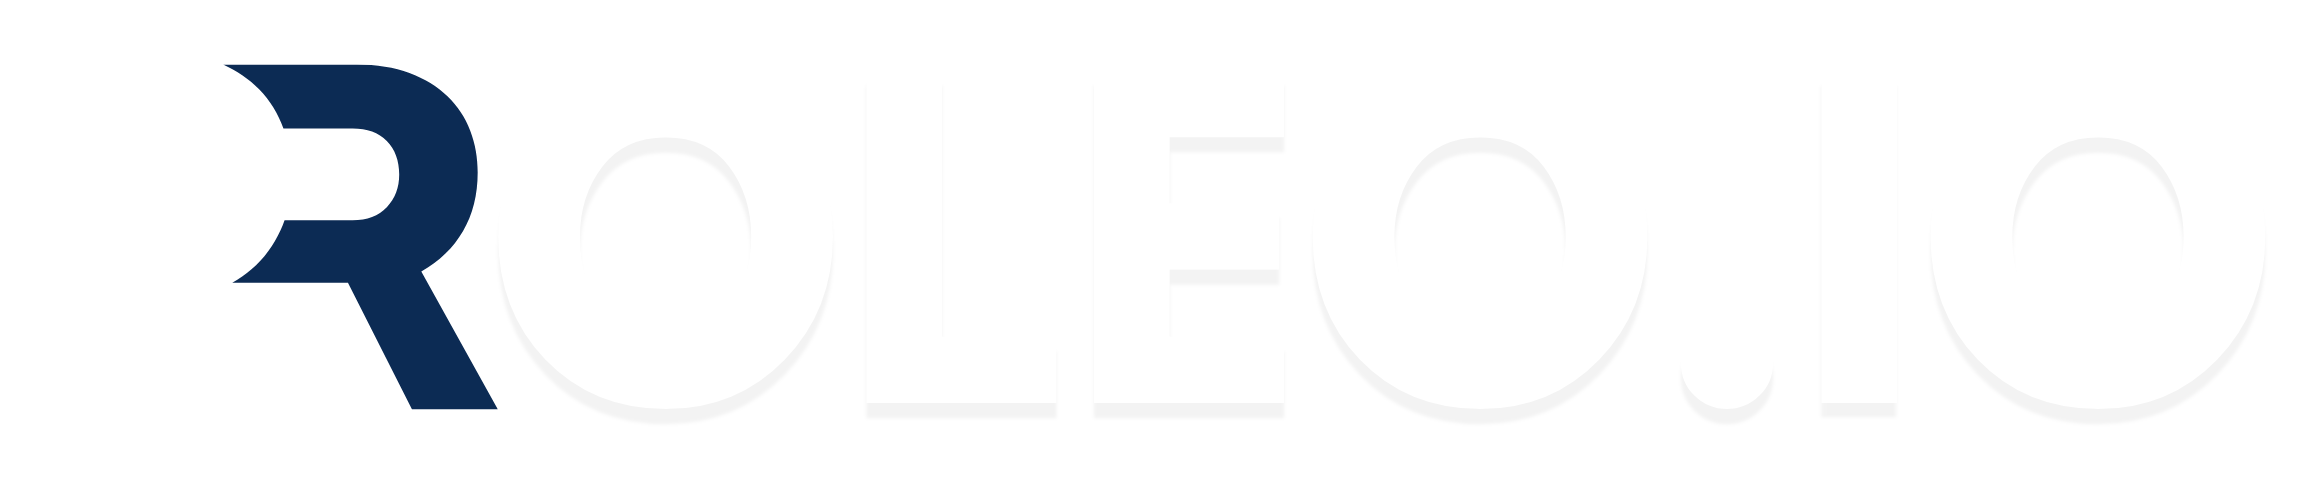 Proleo main logo